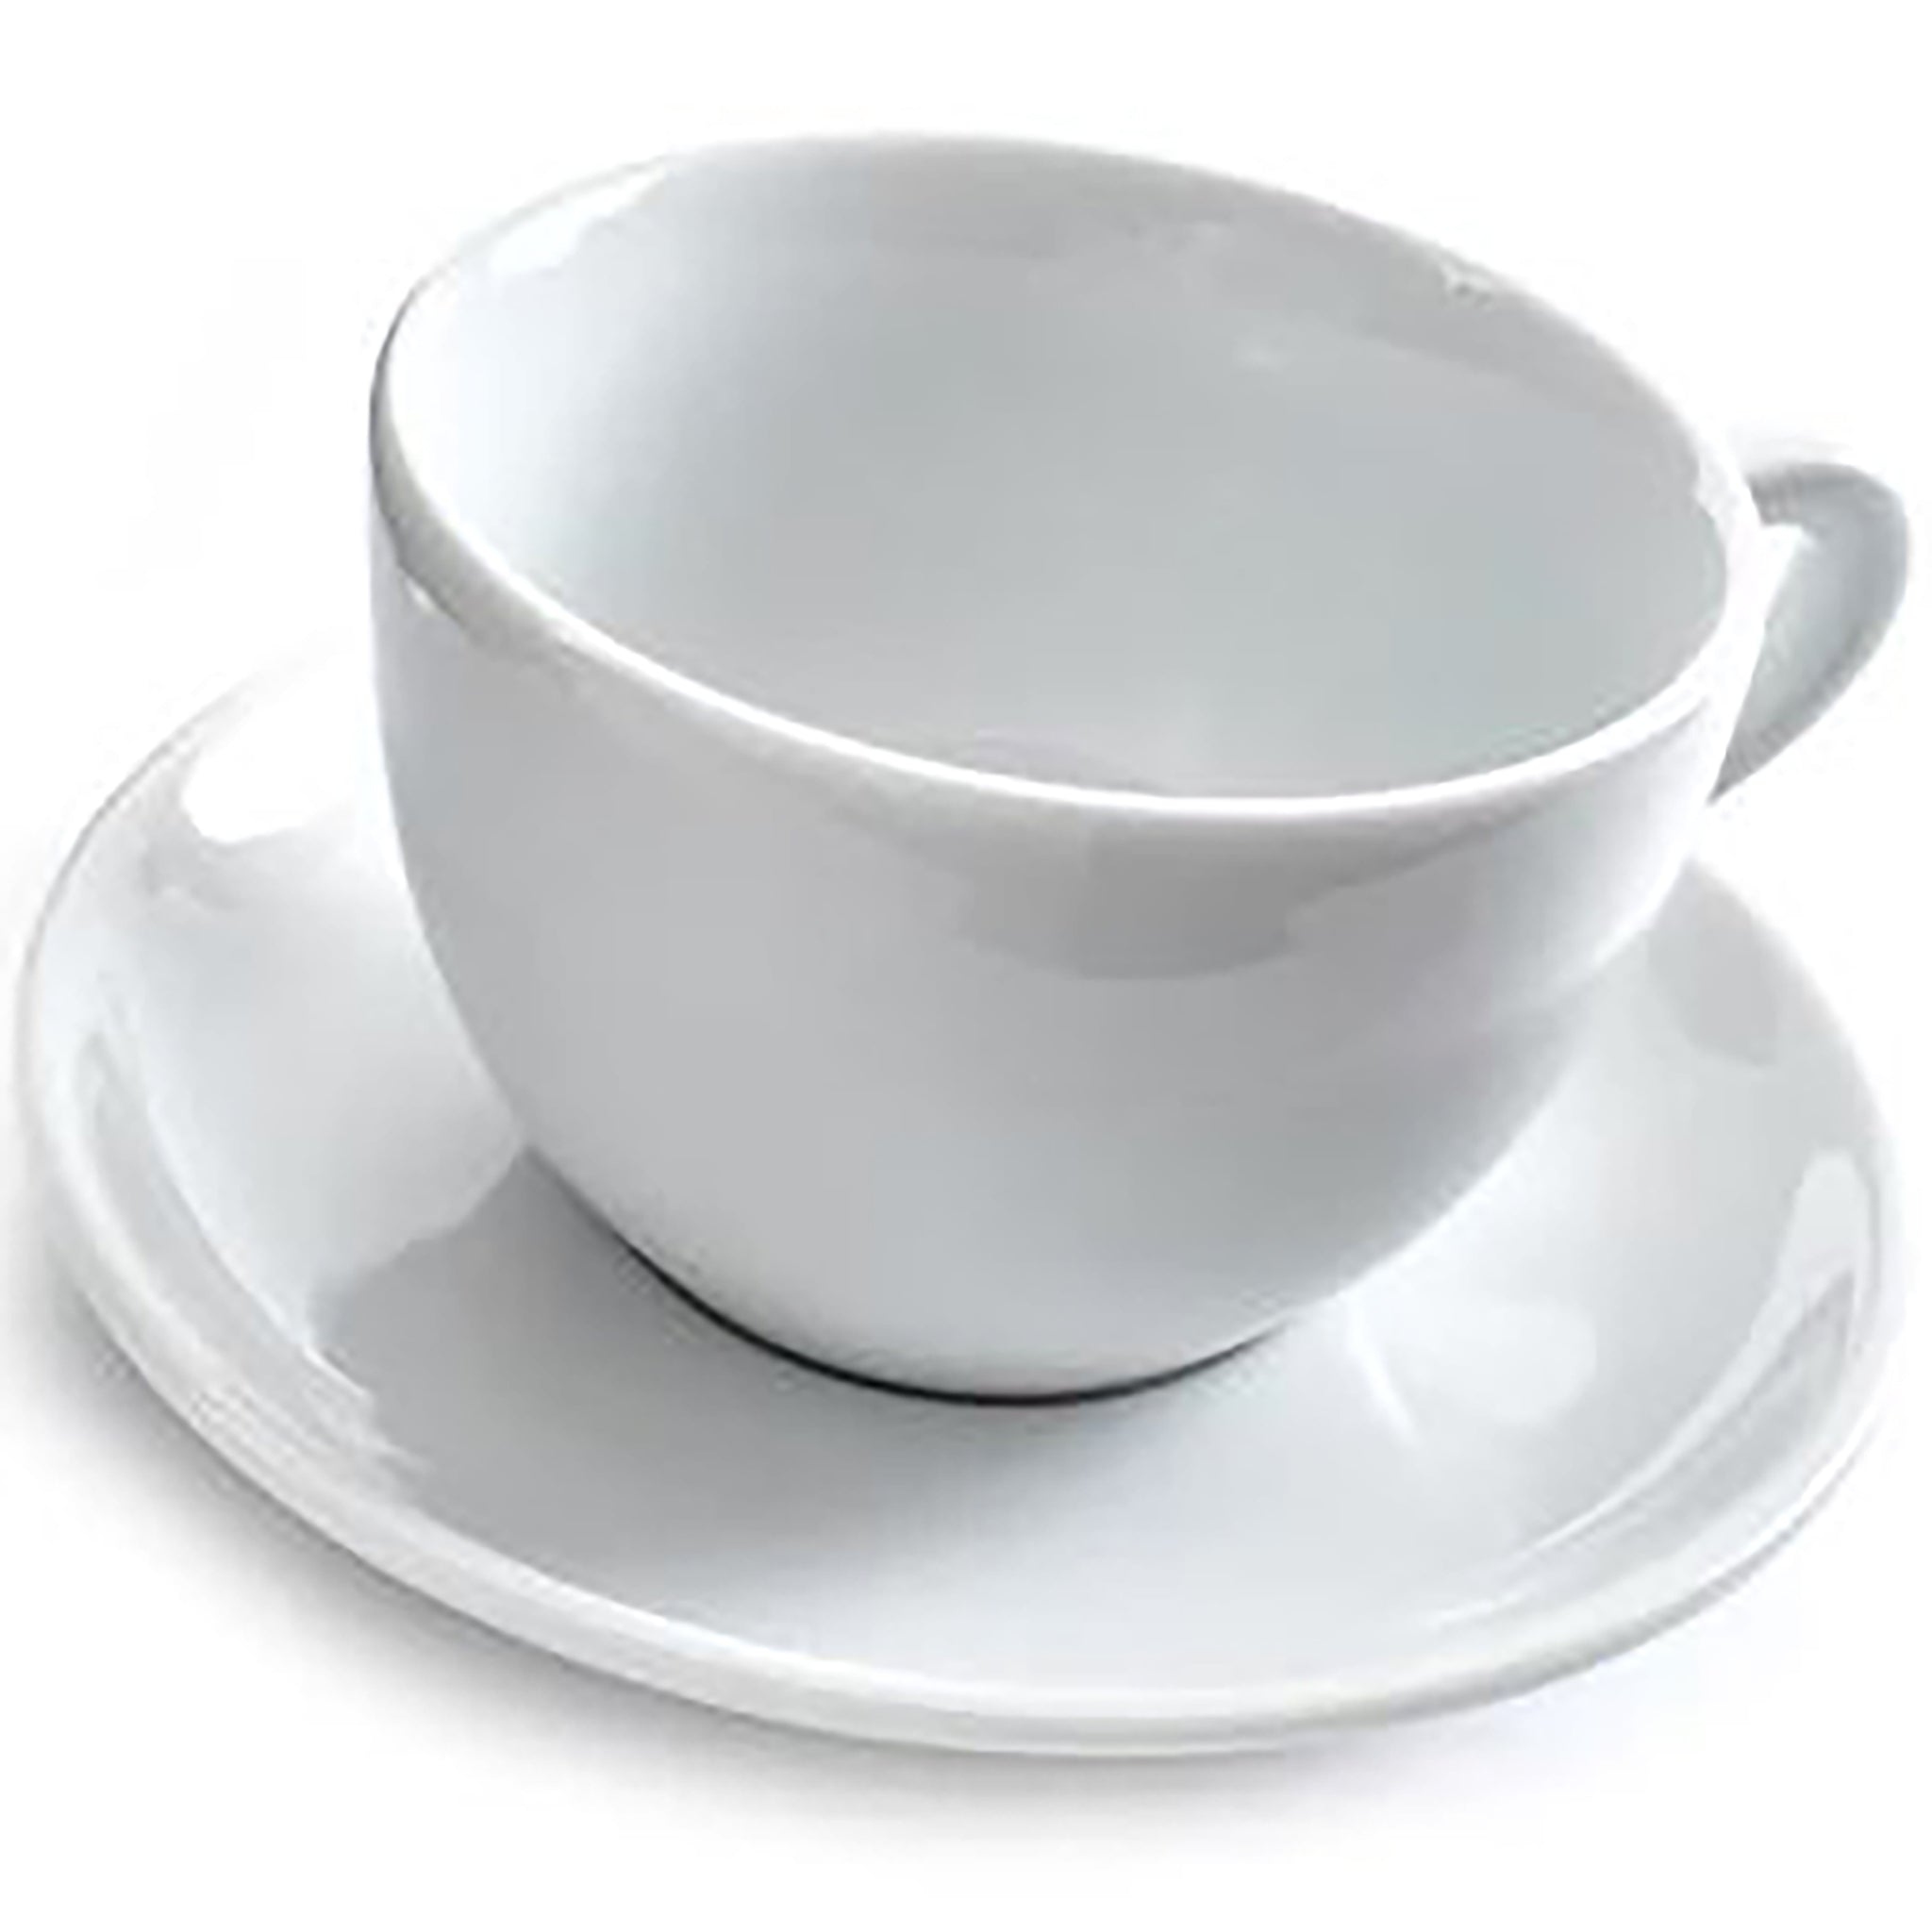 http://phoenixfoodequipment.com/cdn/shop/products/Ancap-Verona-Cappuccino-Cup-Saucer.jpg?v=1647147986